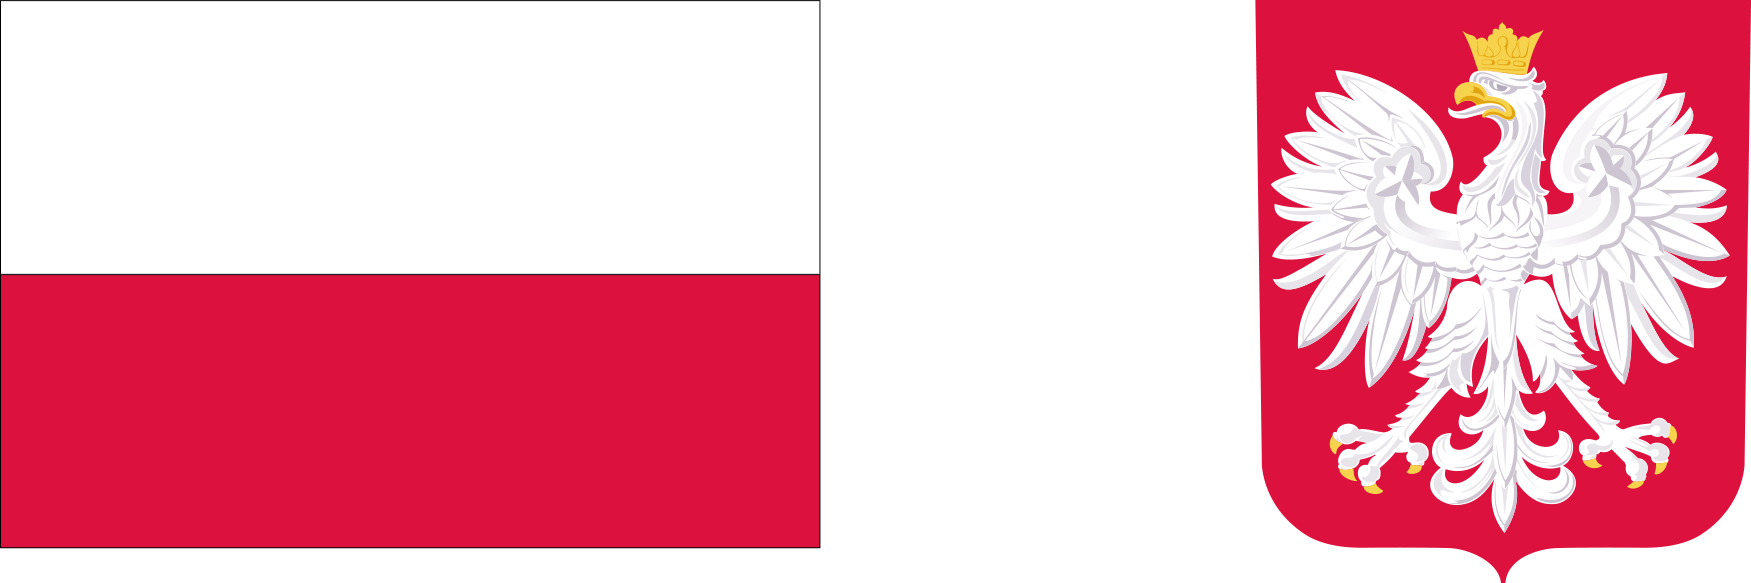 flaga biało-czerwona, godło polski